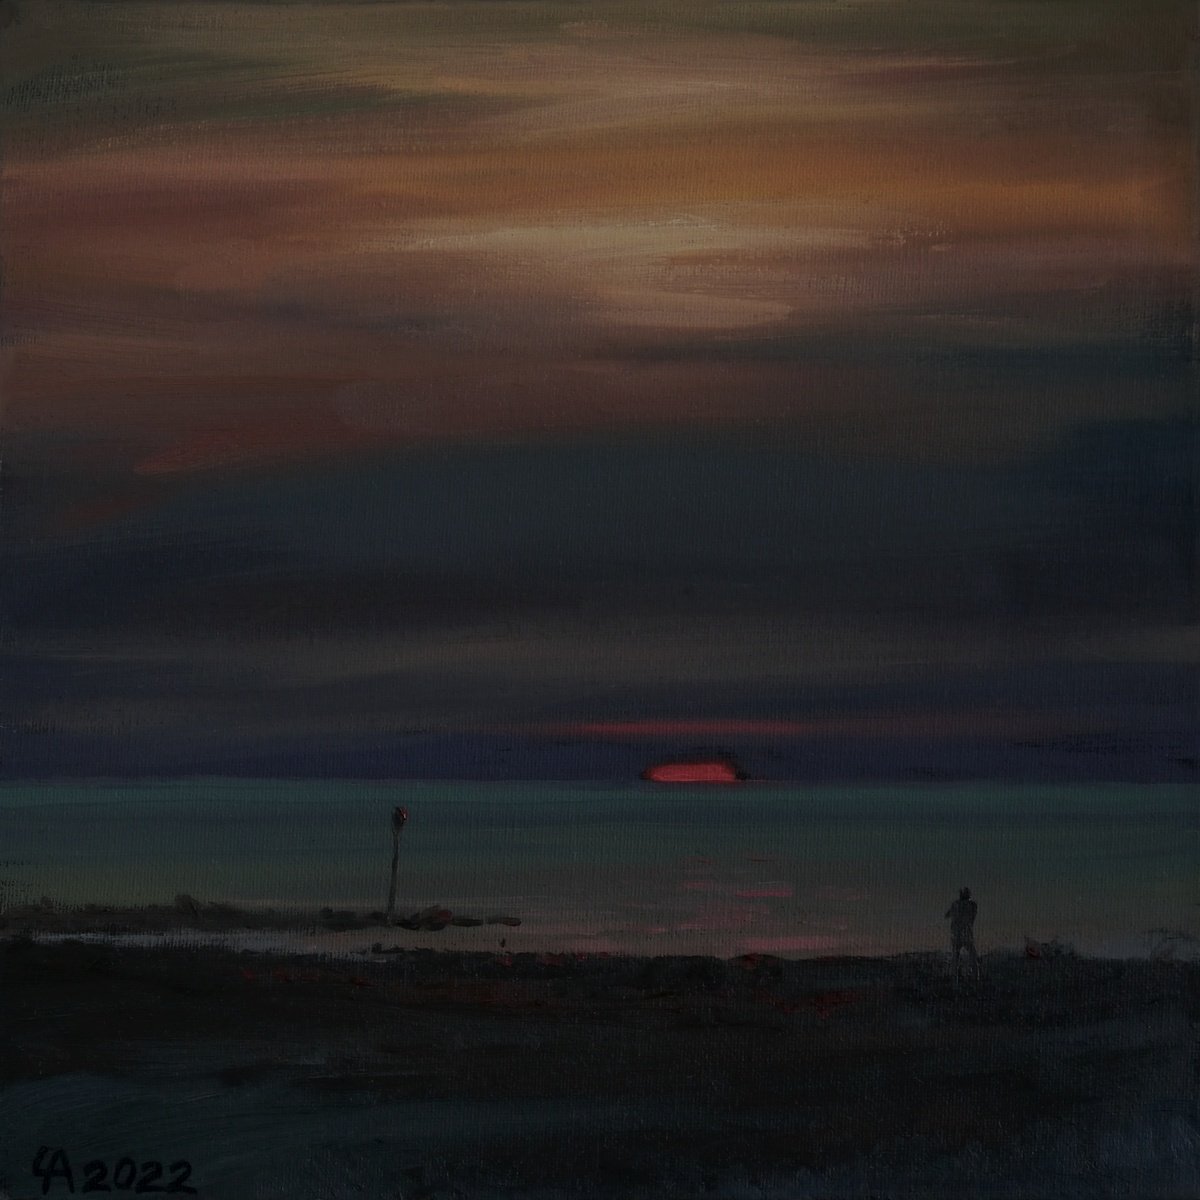 Dark sunset in Scheveningen II by Anastasia Chernysheva